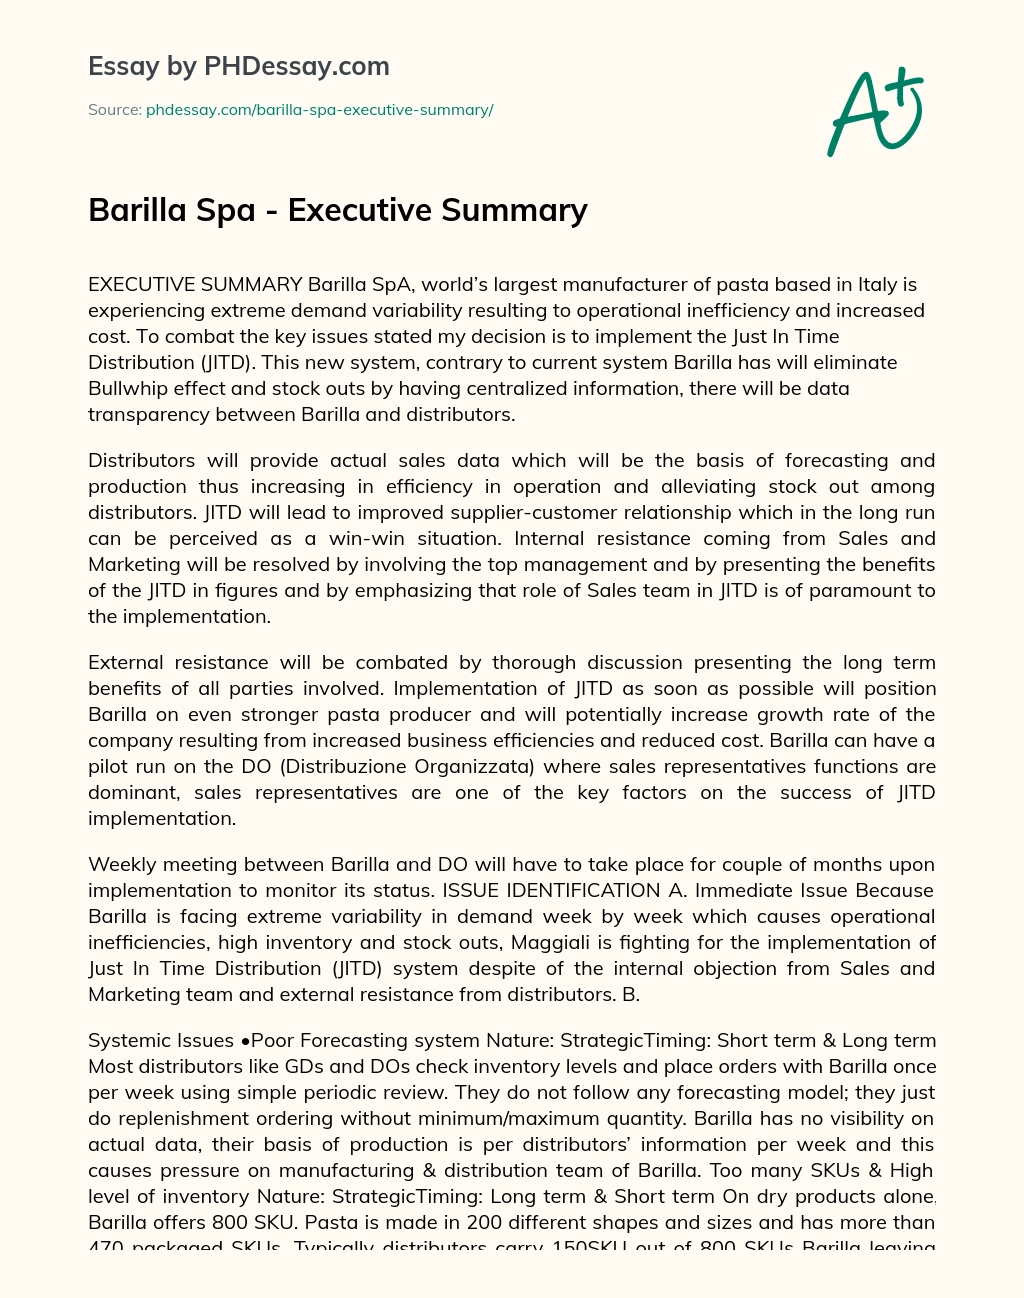 Barilla Spa – Executive Summary essay